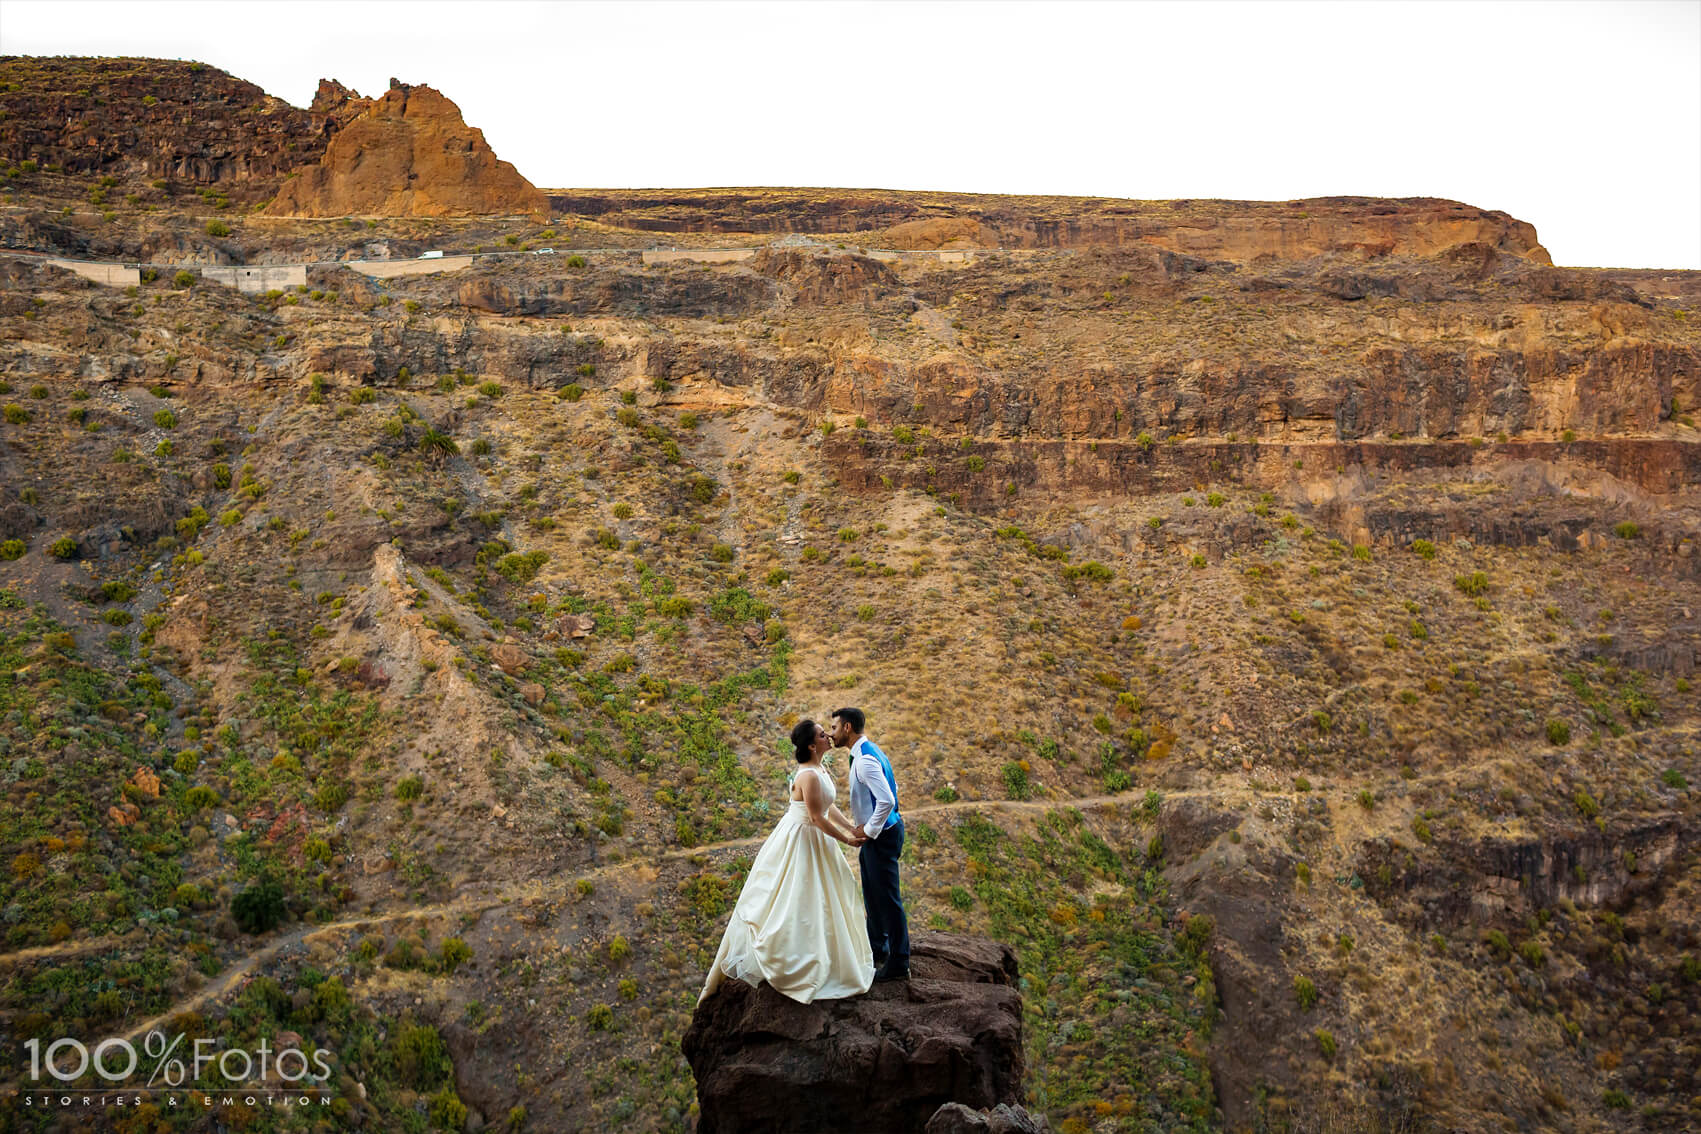 Pos boda autentica en Gran Canaria